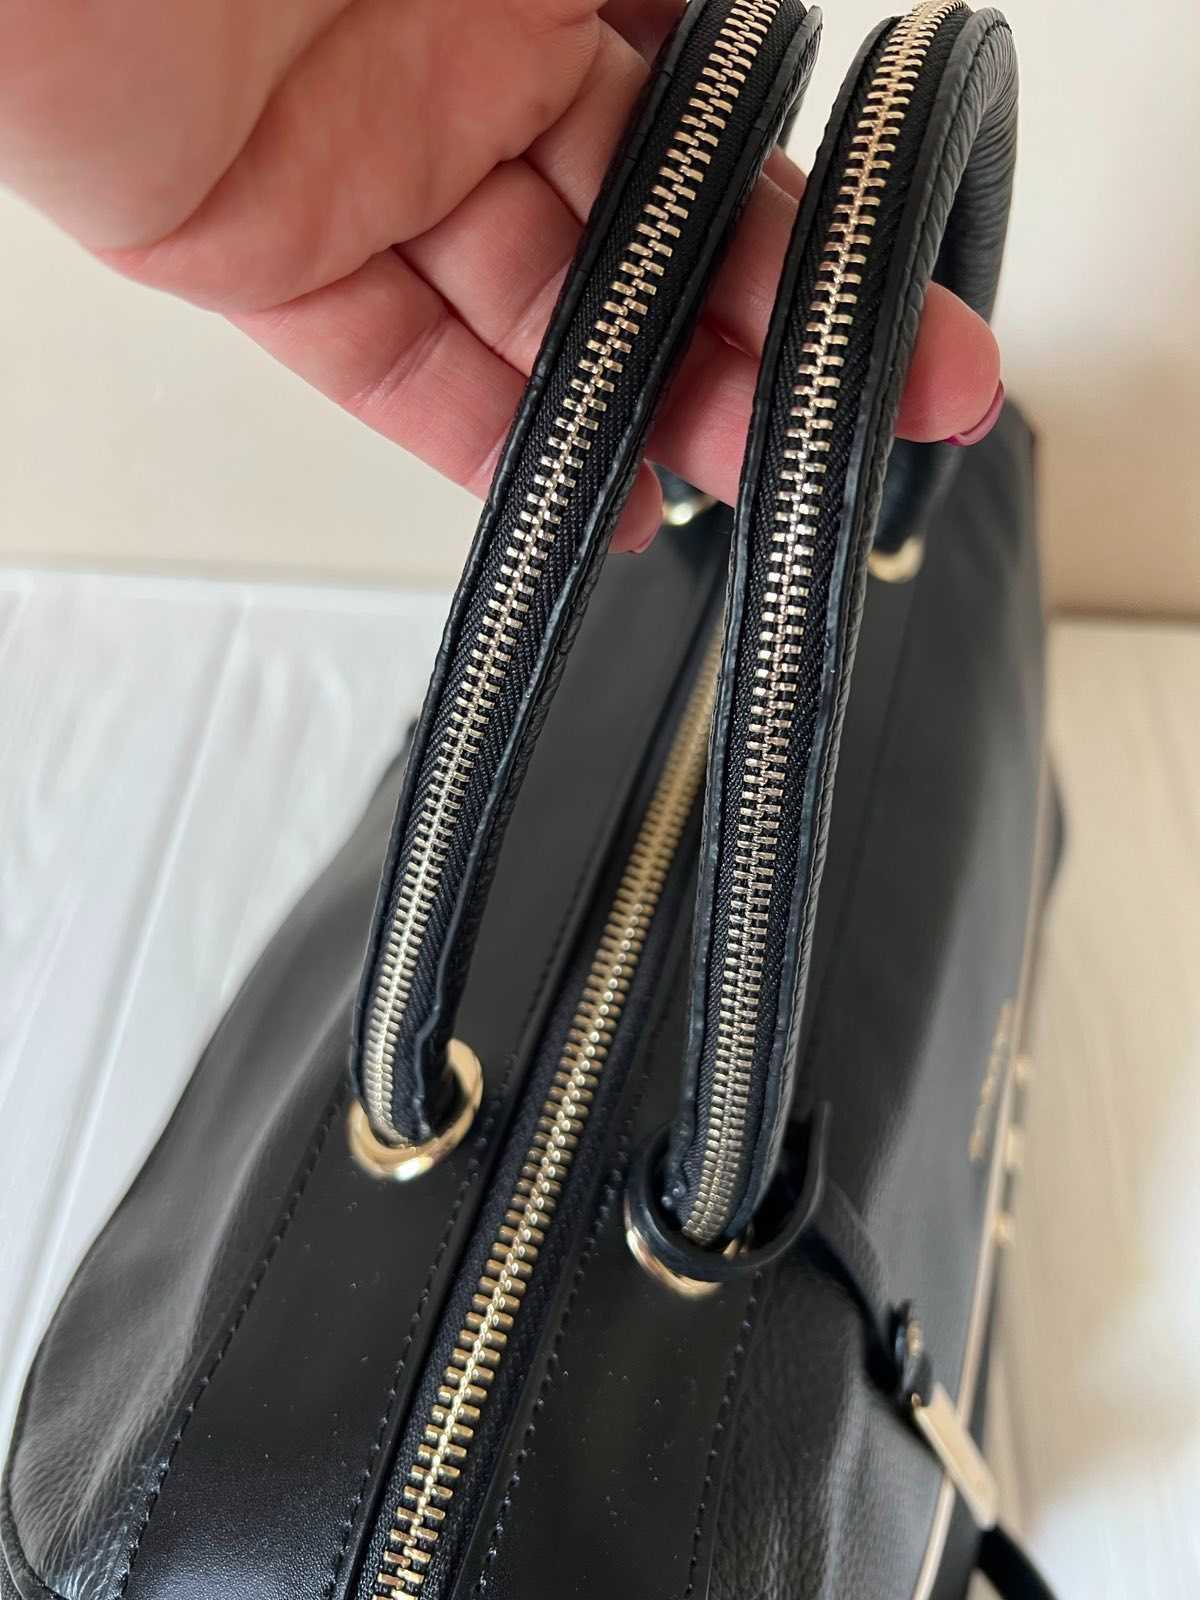 Женская черная удобная сумка cromia италия оригинал кожа средний разме